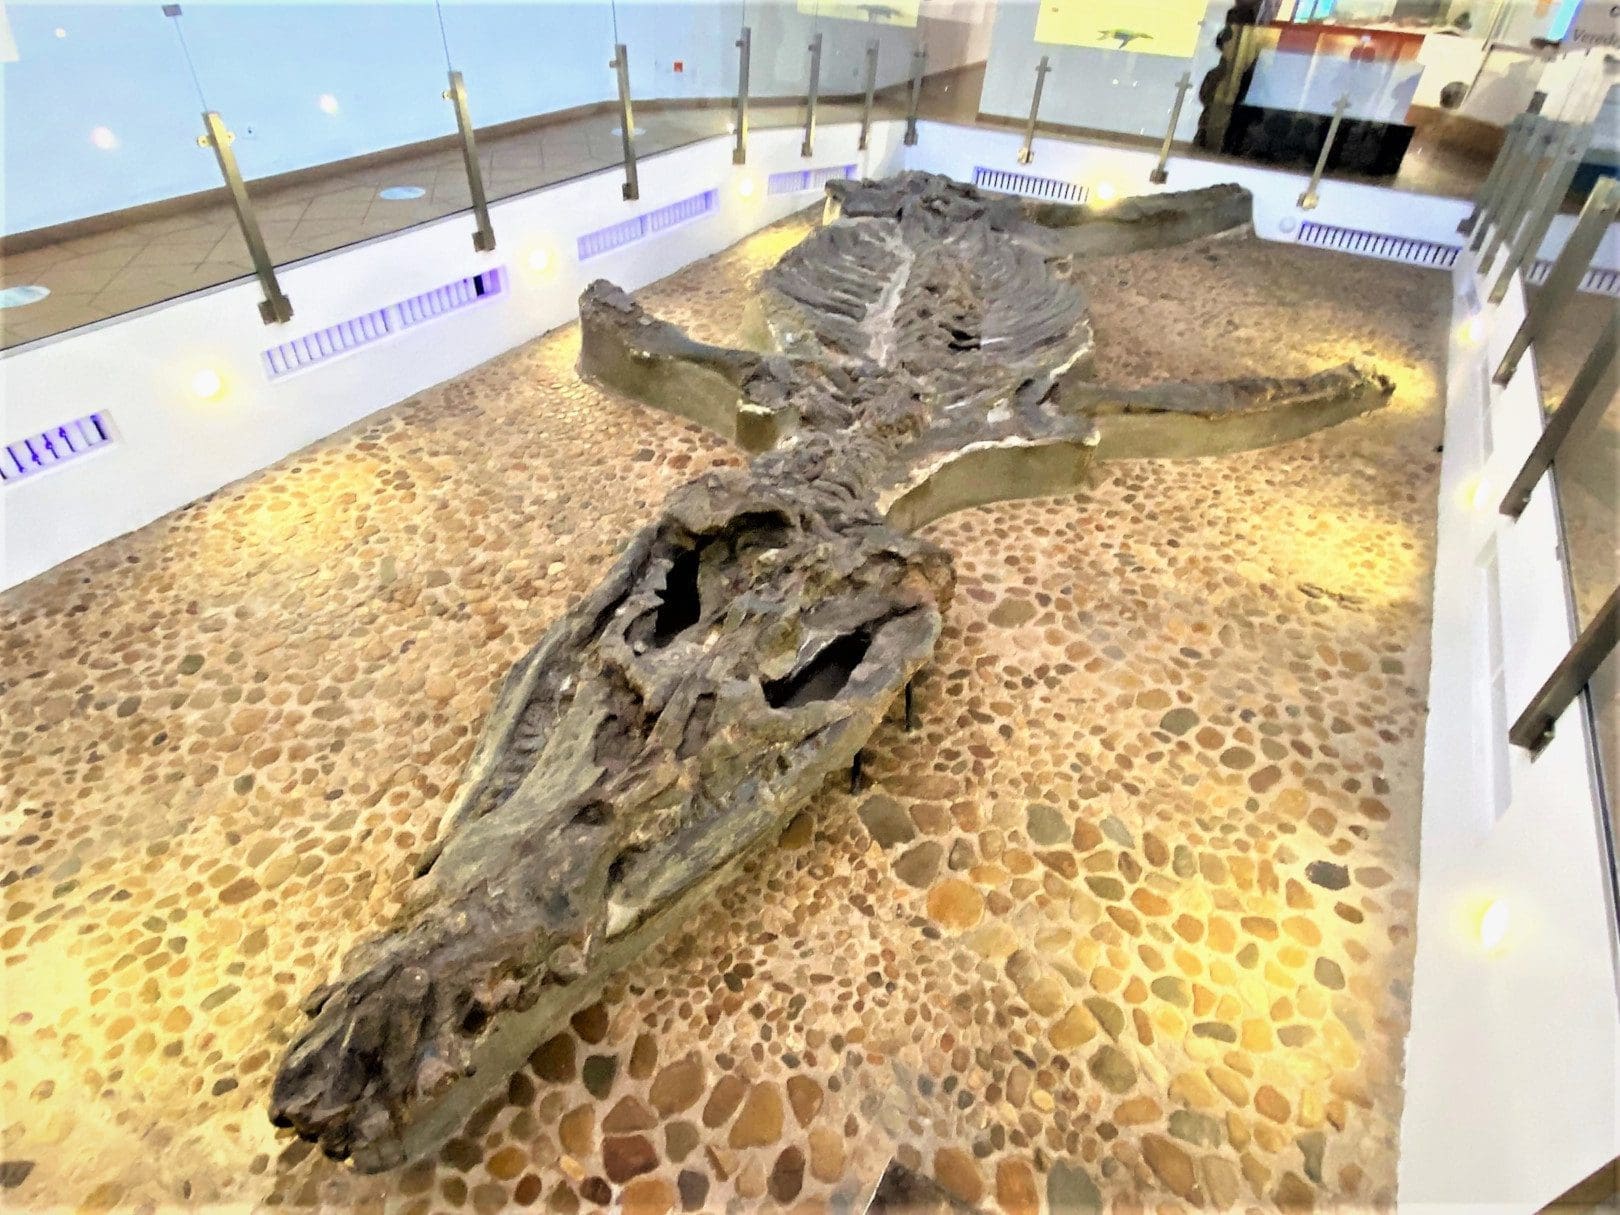 Kronosaurus dinosaur on display at Villa de Leyva’s Fossil Museum